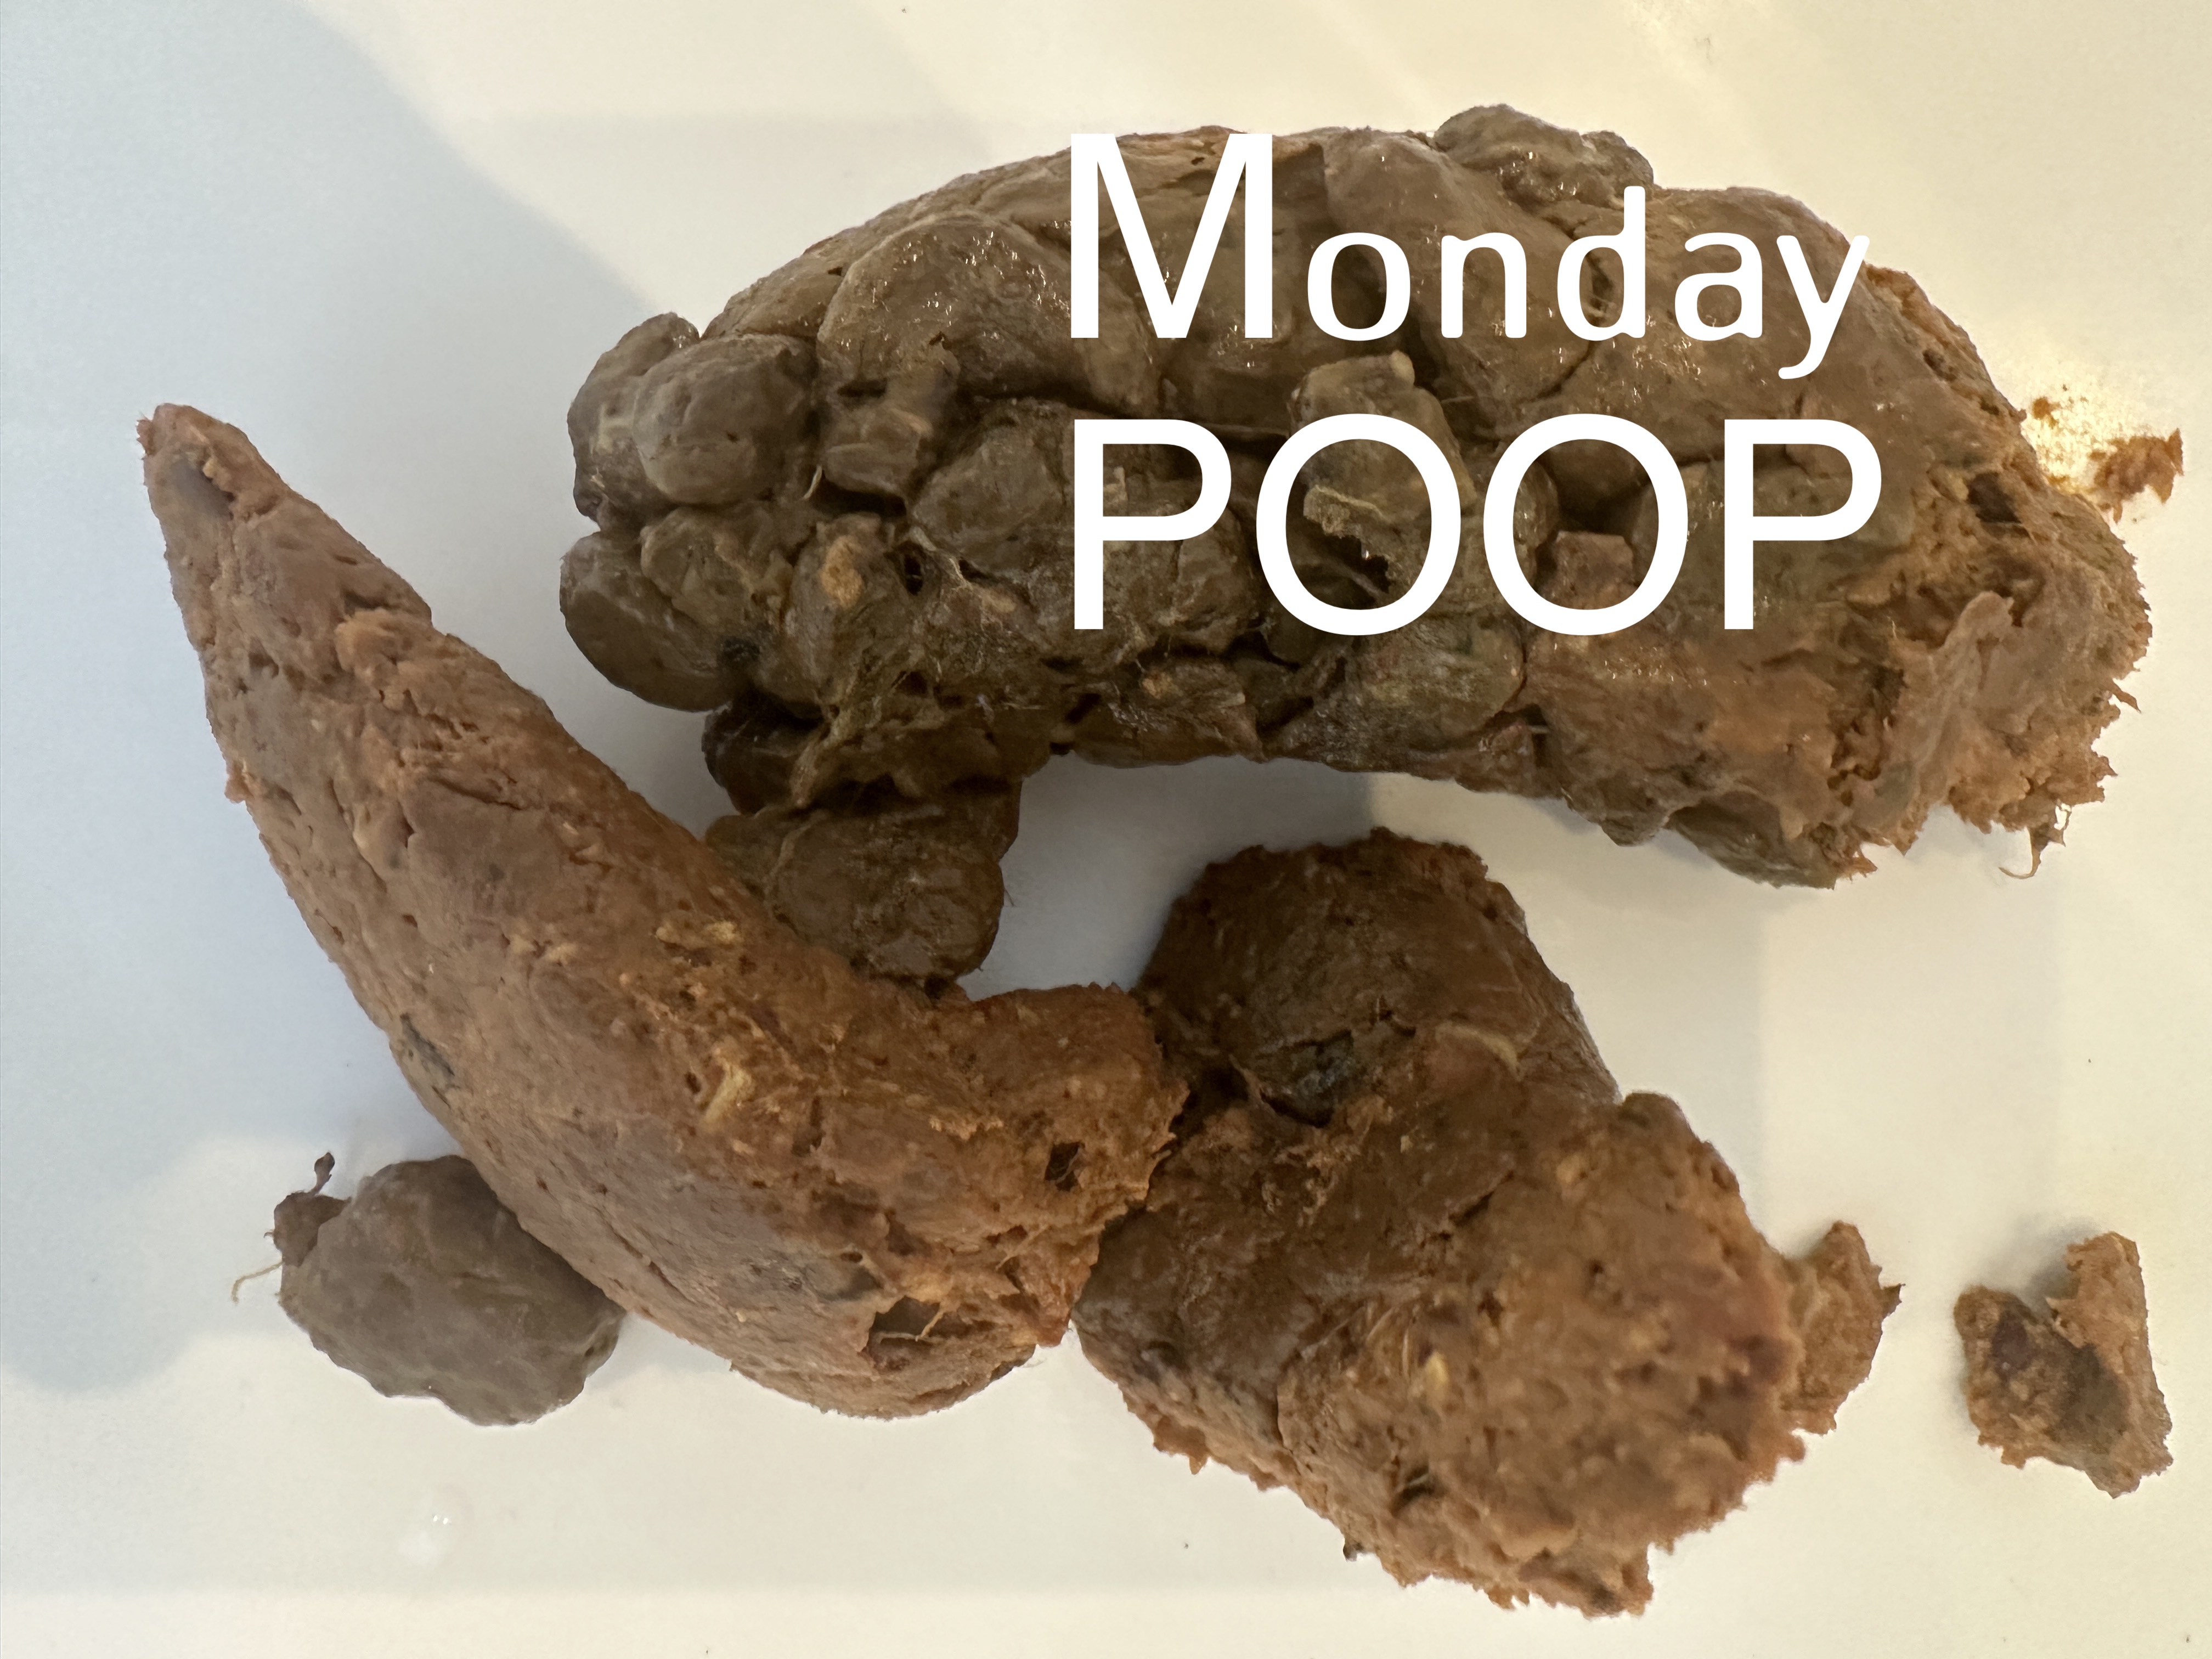 My Monday Poop